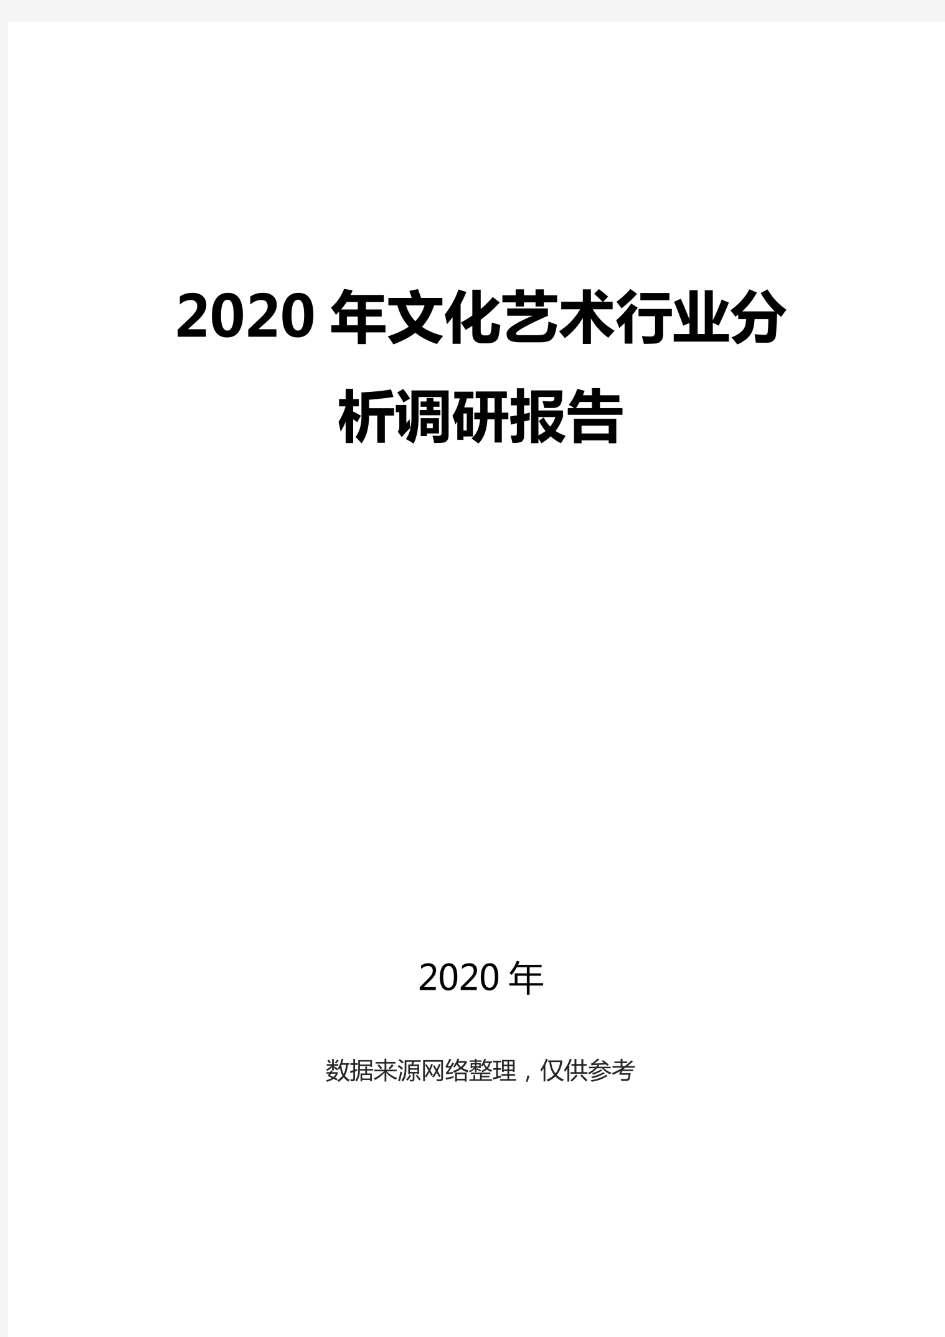 2020文化艺术行业分析调研报告